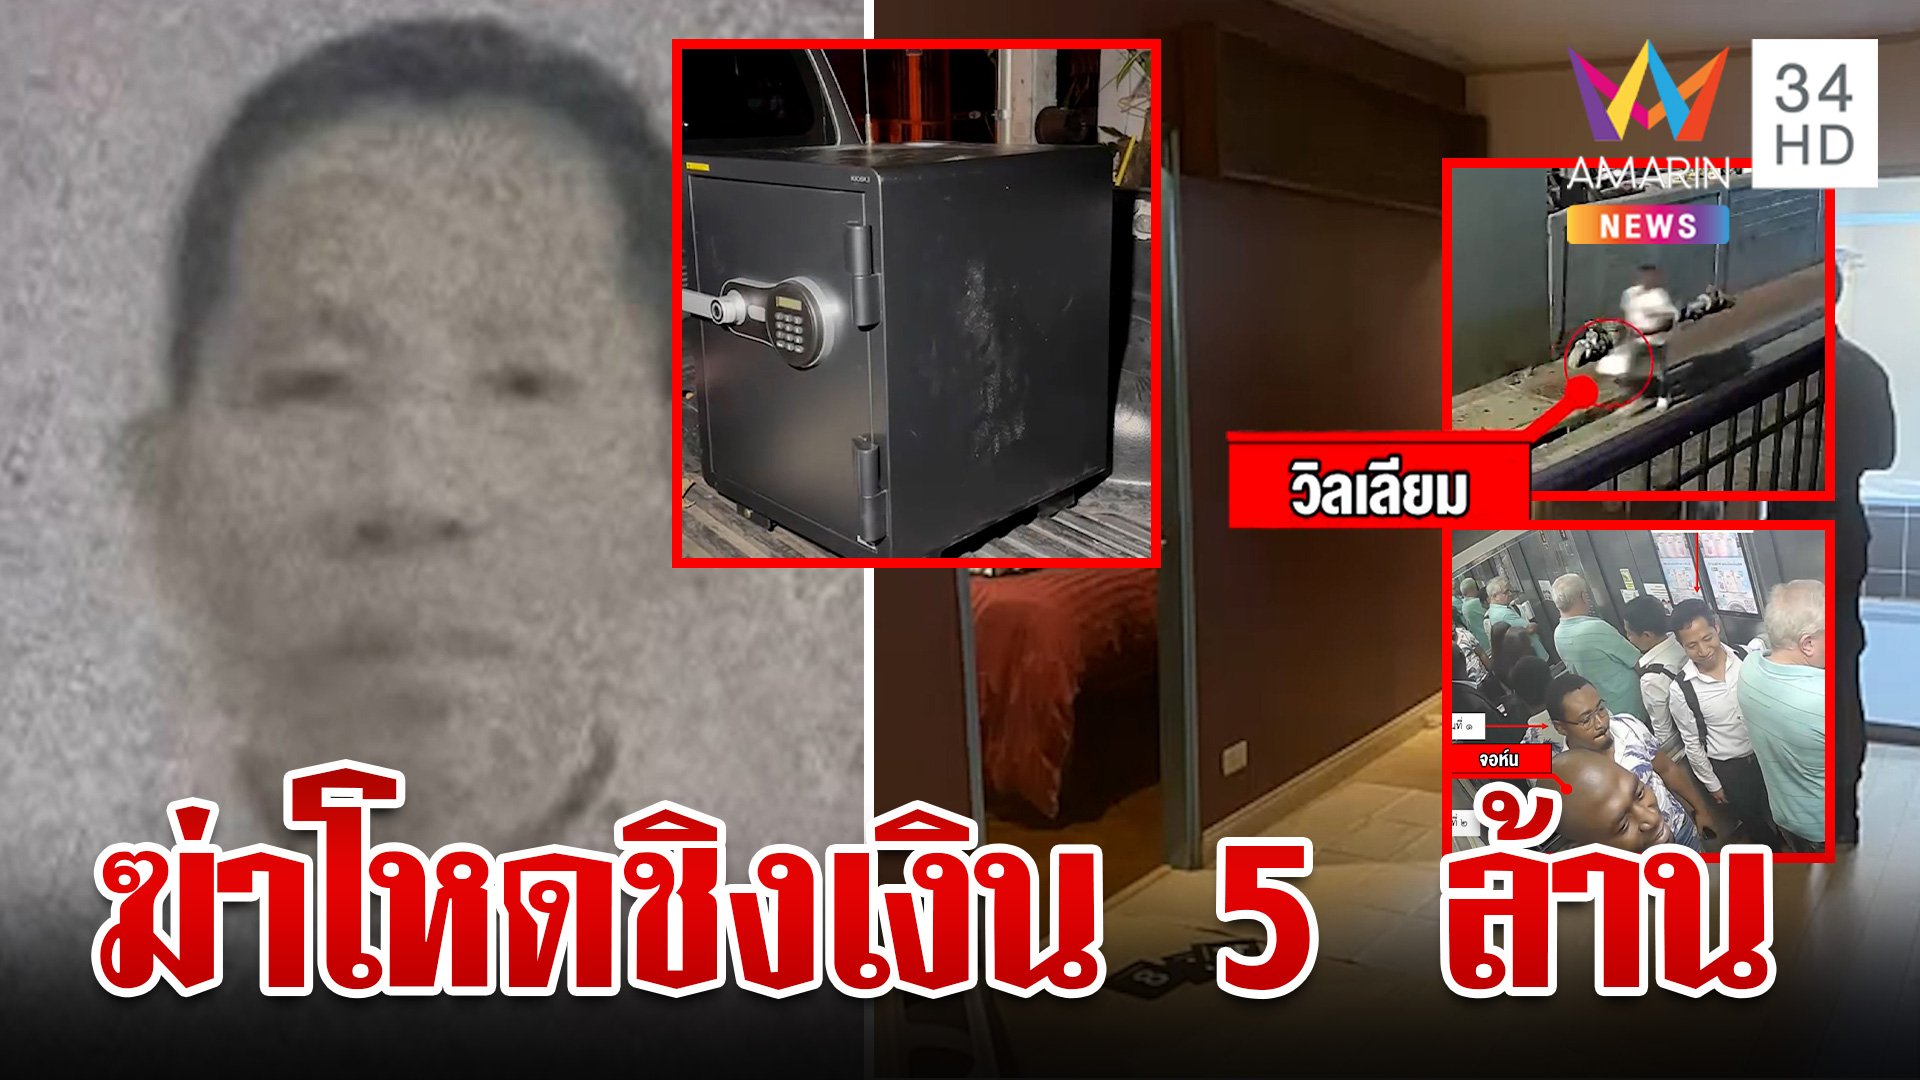 แก๊งเงินดำฆ่าเหี้ยมนักธุรกิจฉก 5 ล้าน ตำรวจล่าข้ามโลกหยามกฎหมายไทย  | ทุบโต๊ะข่าว | 14 ก.พ. 67 | AMARIN TVHD34